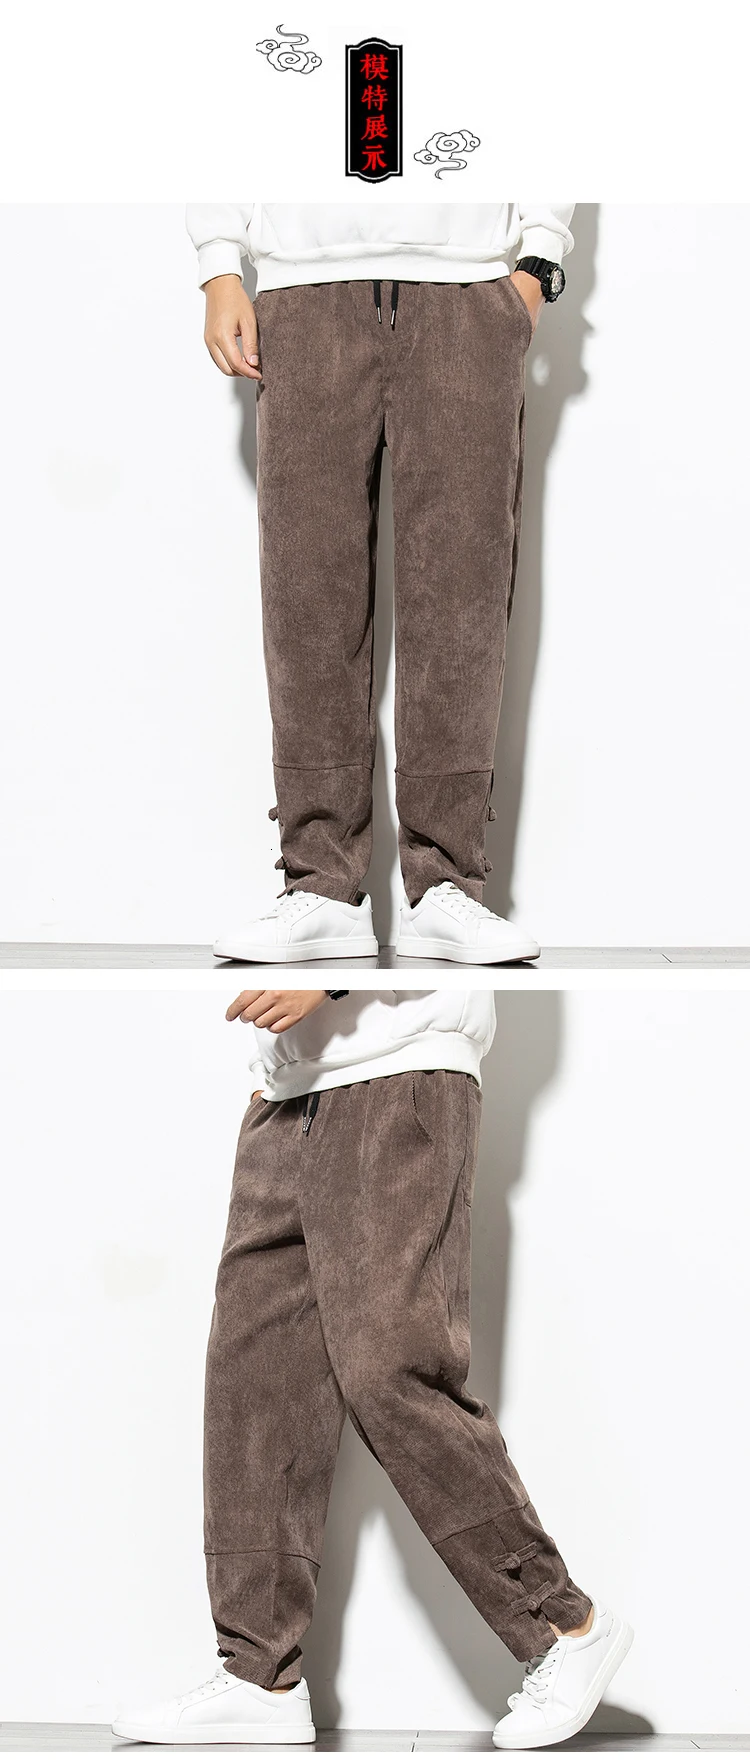 Осенние вельветовые брюки мужские модные ретро однотонные хлопковые повседневные брюки мужские уличные хип-хоп свободные прямые брюки M-5XL